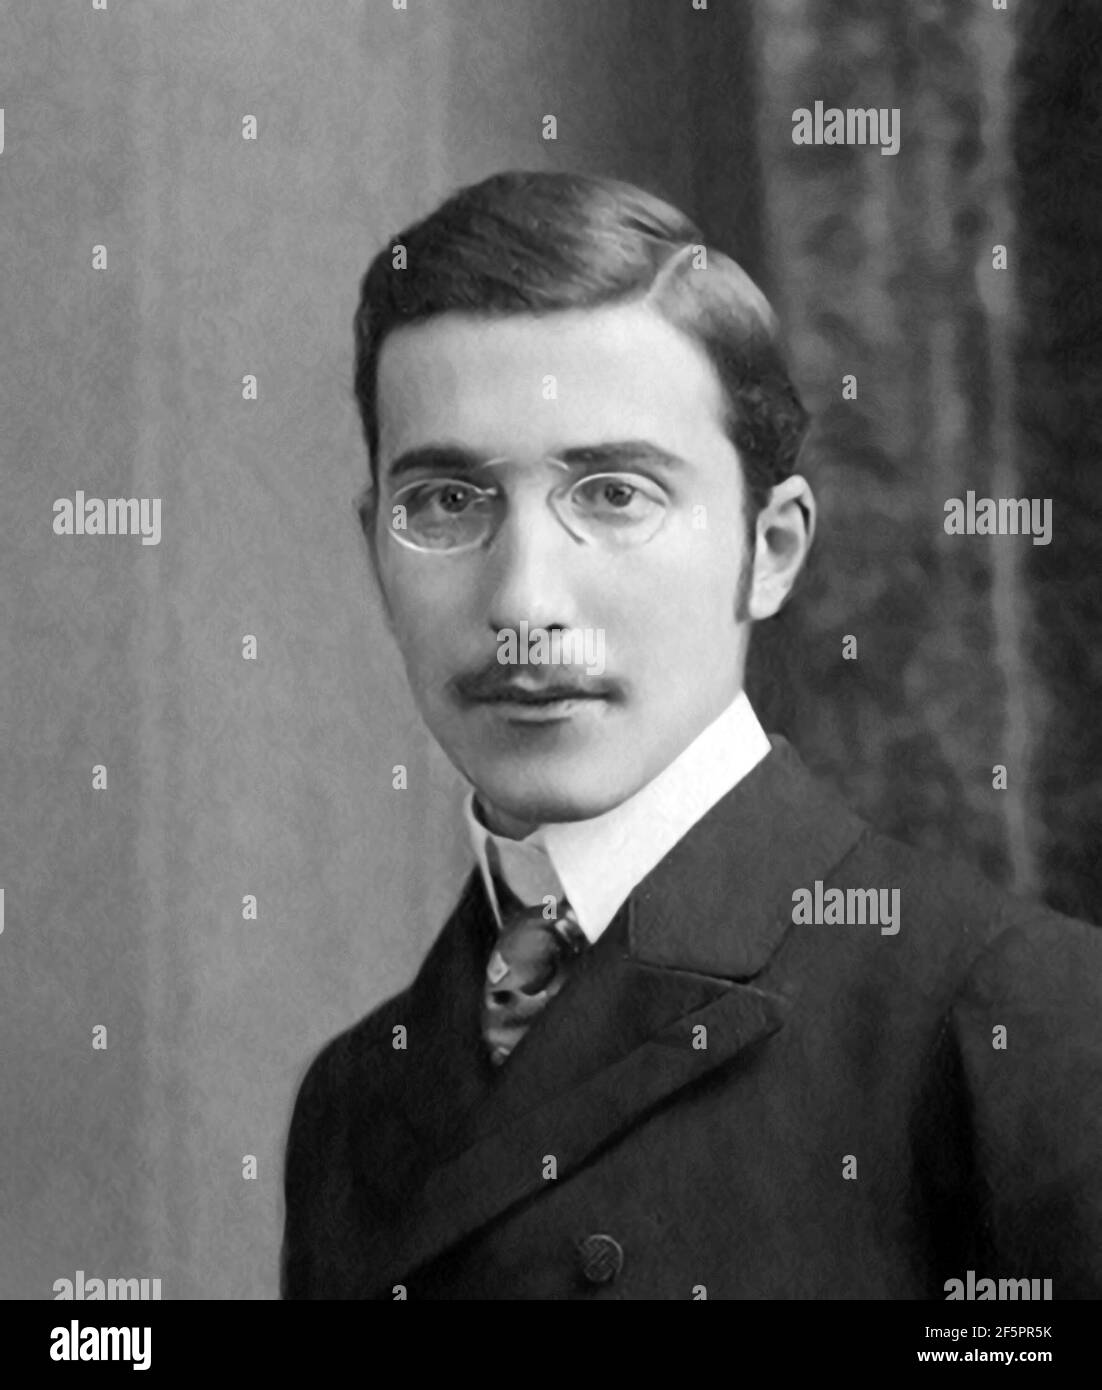 Stefan Zweig. Portrait of the Austrian writer Stefan Zweig (1881-1942), c. 1900 Stock Photo